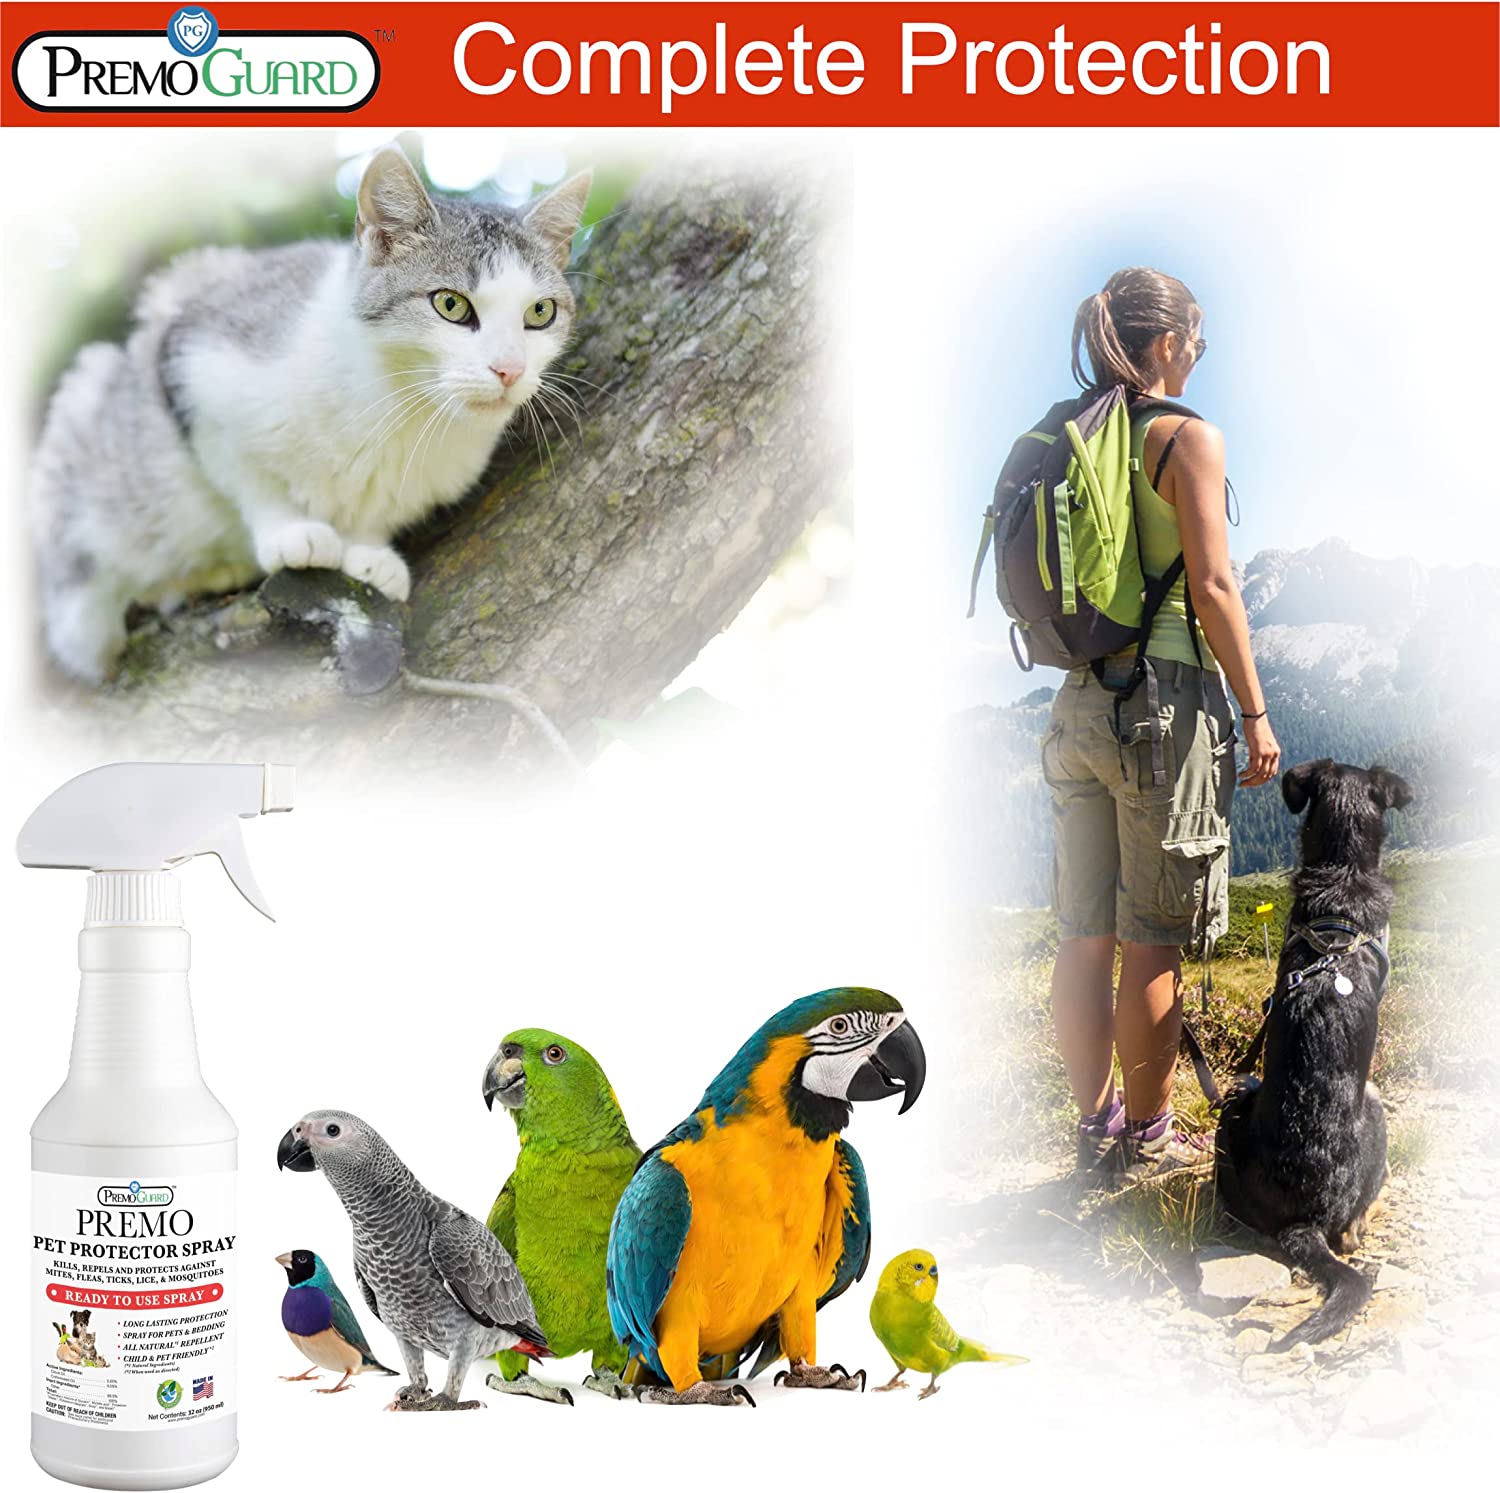 Pet Protector Spray by Premo Guard - 16 oz